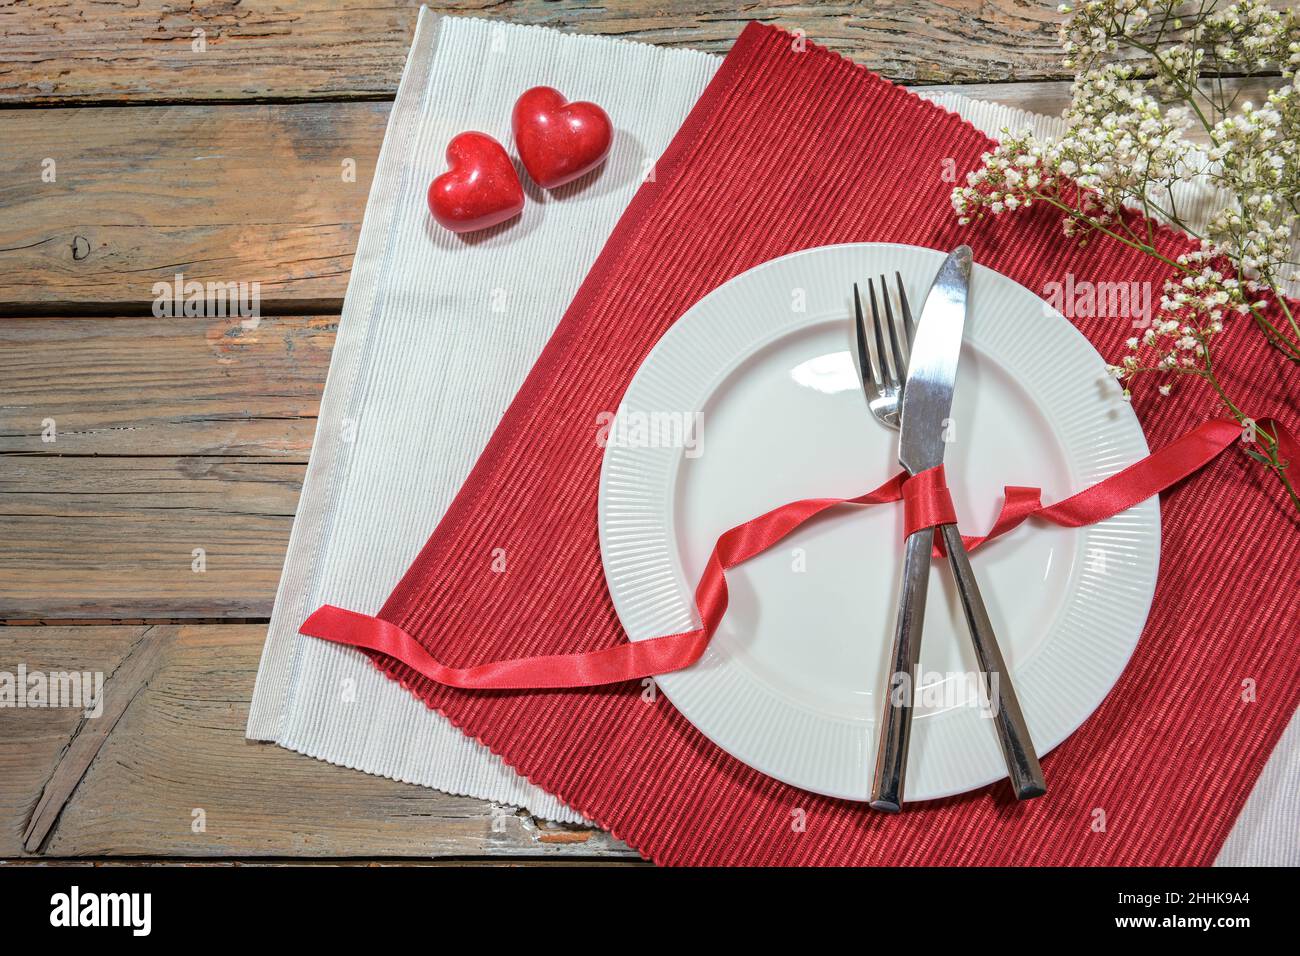 Table pour un dîner romantique avec deux coeurs, plat et couverts sur des serviettes rouges et blanches, concept amour, table rustique en bois avec espace copie, hig Banque D'Images